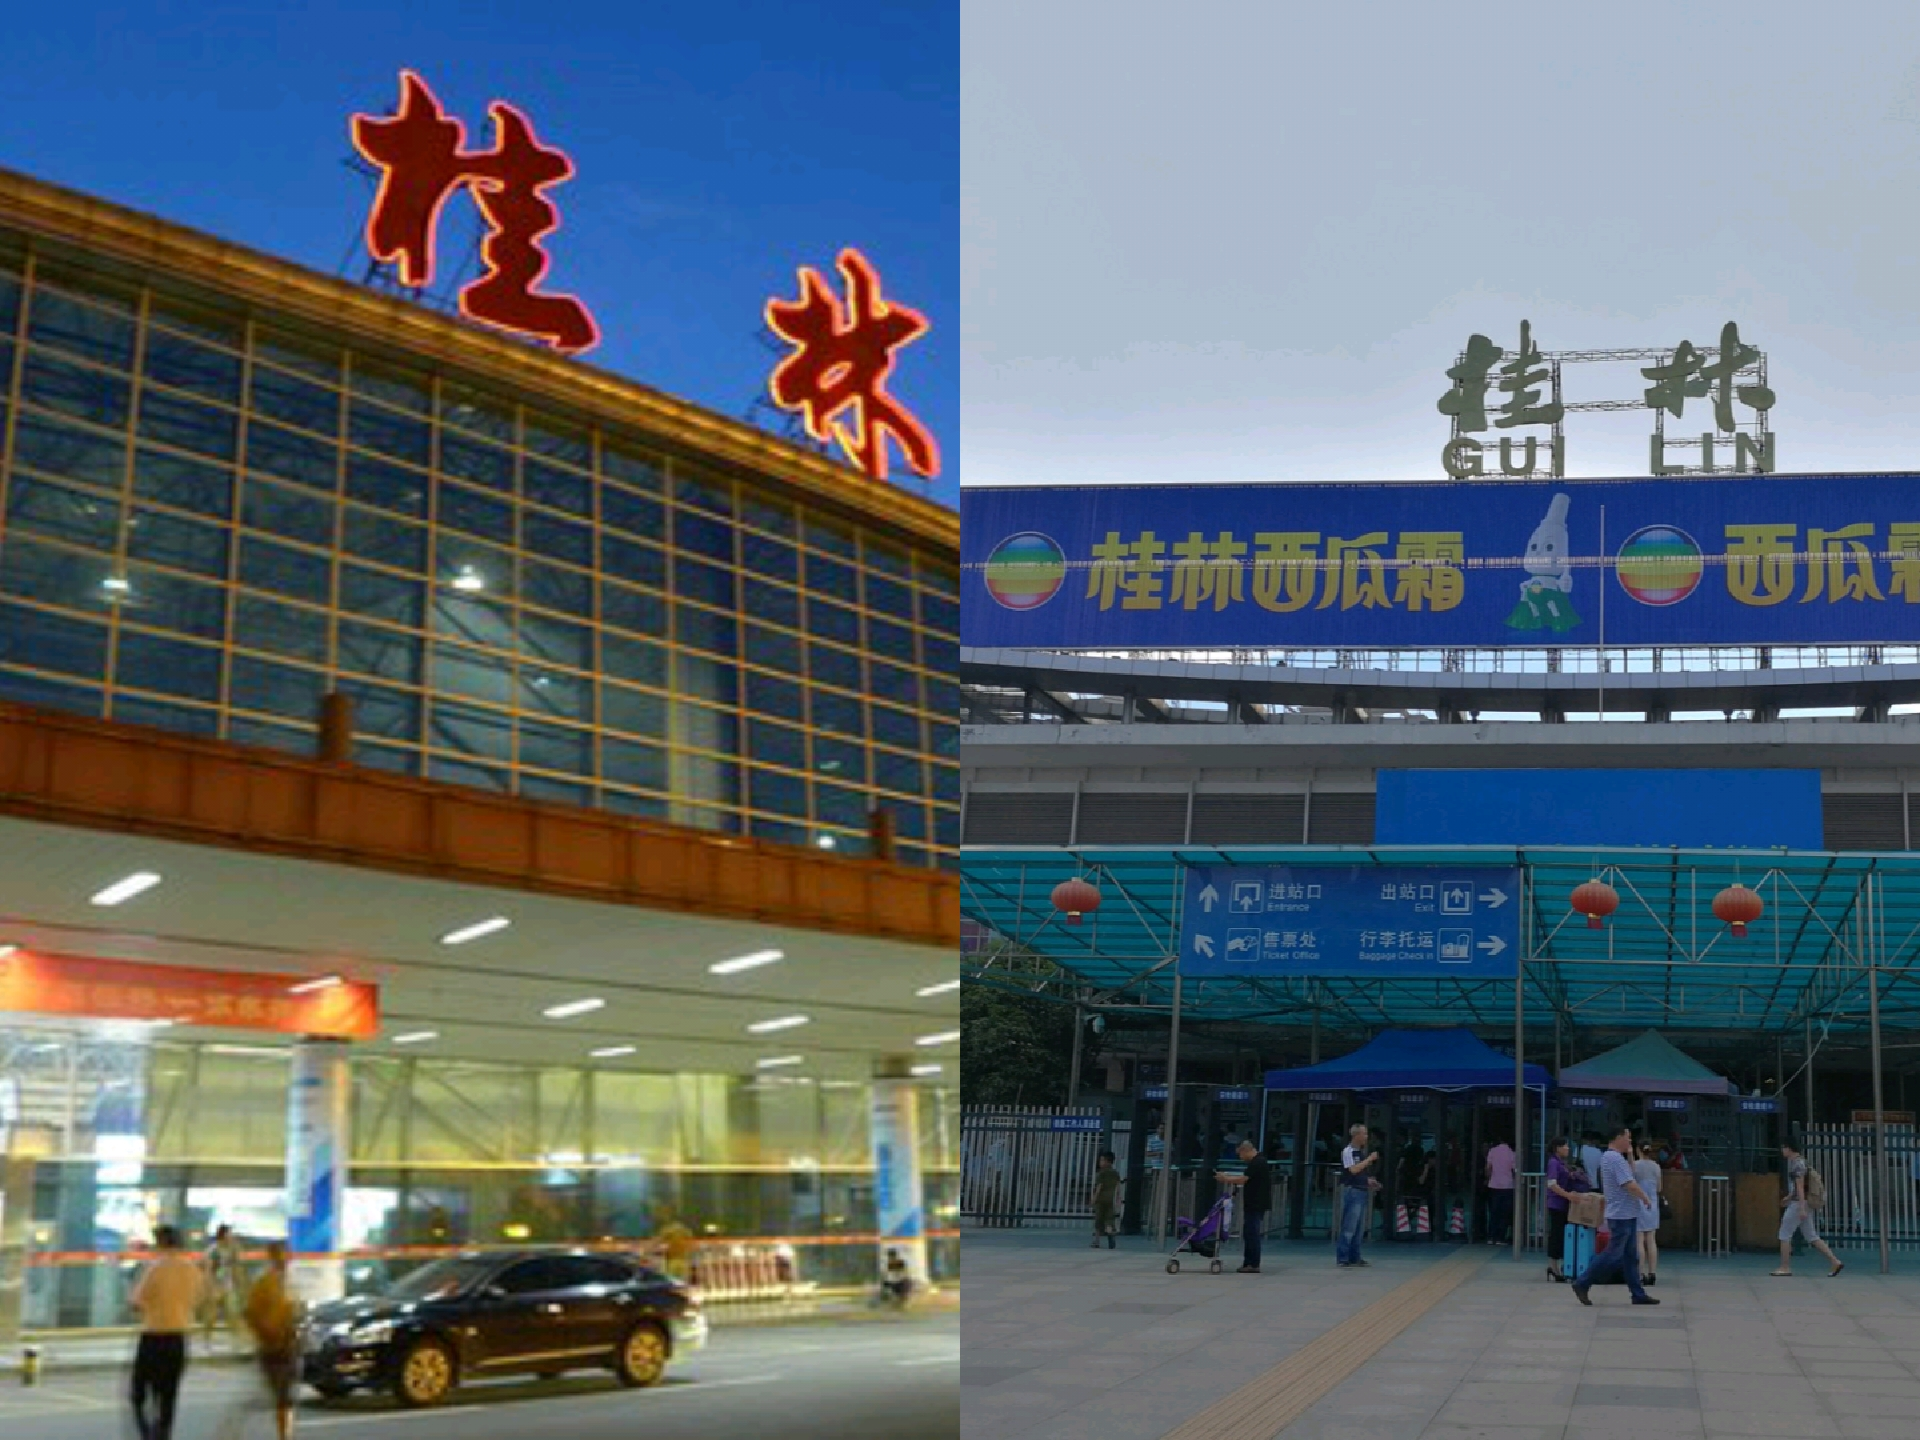 桂林北站:距离次于桂林站,到市区坐公交半小时左右3